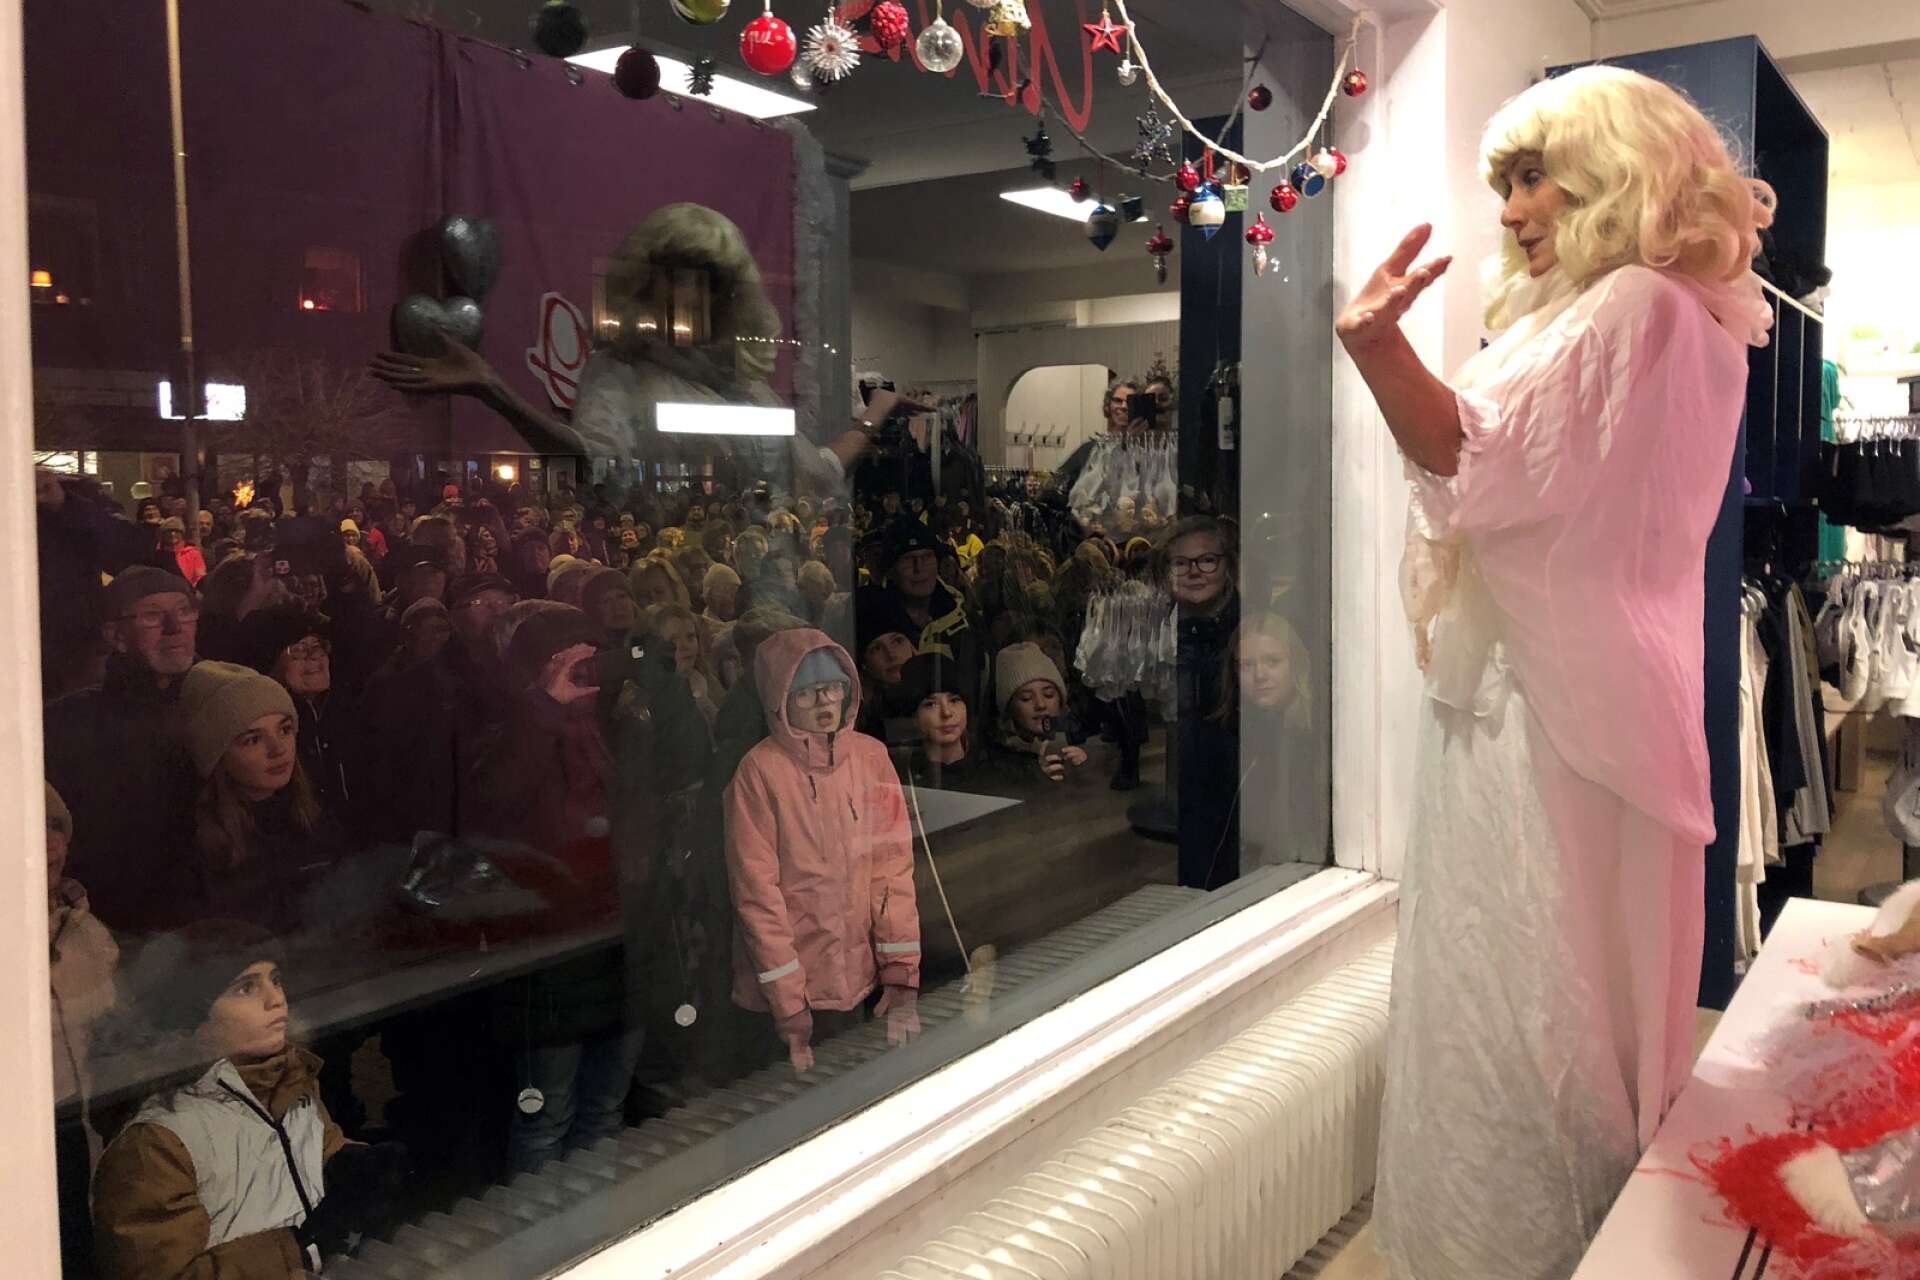 Många nyfikna åskådare samlades framför Ainas skyltfönster för att se årets show som hade ”Wahlgren-familjen” som tema.